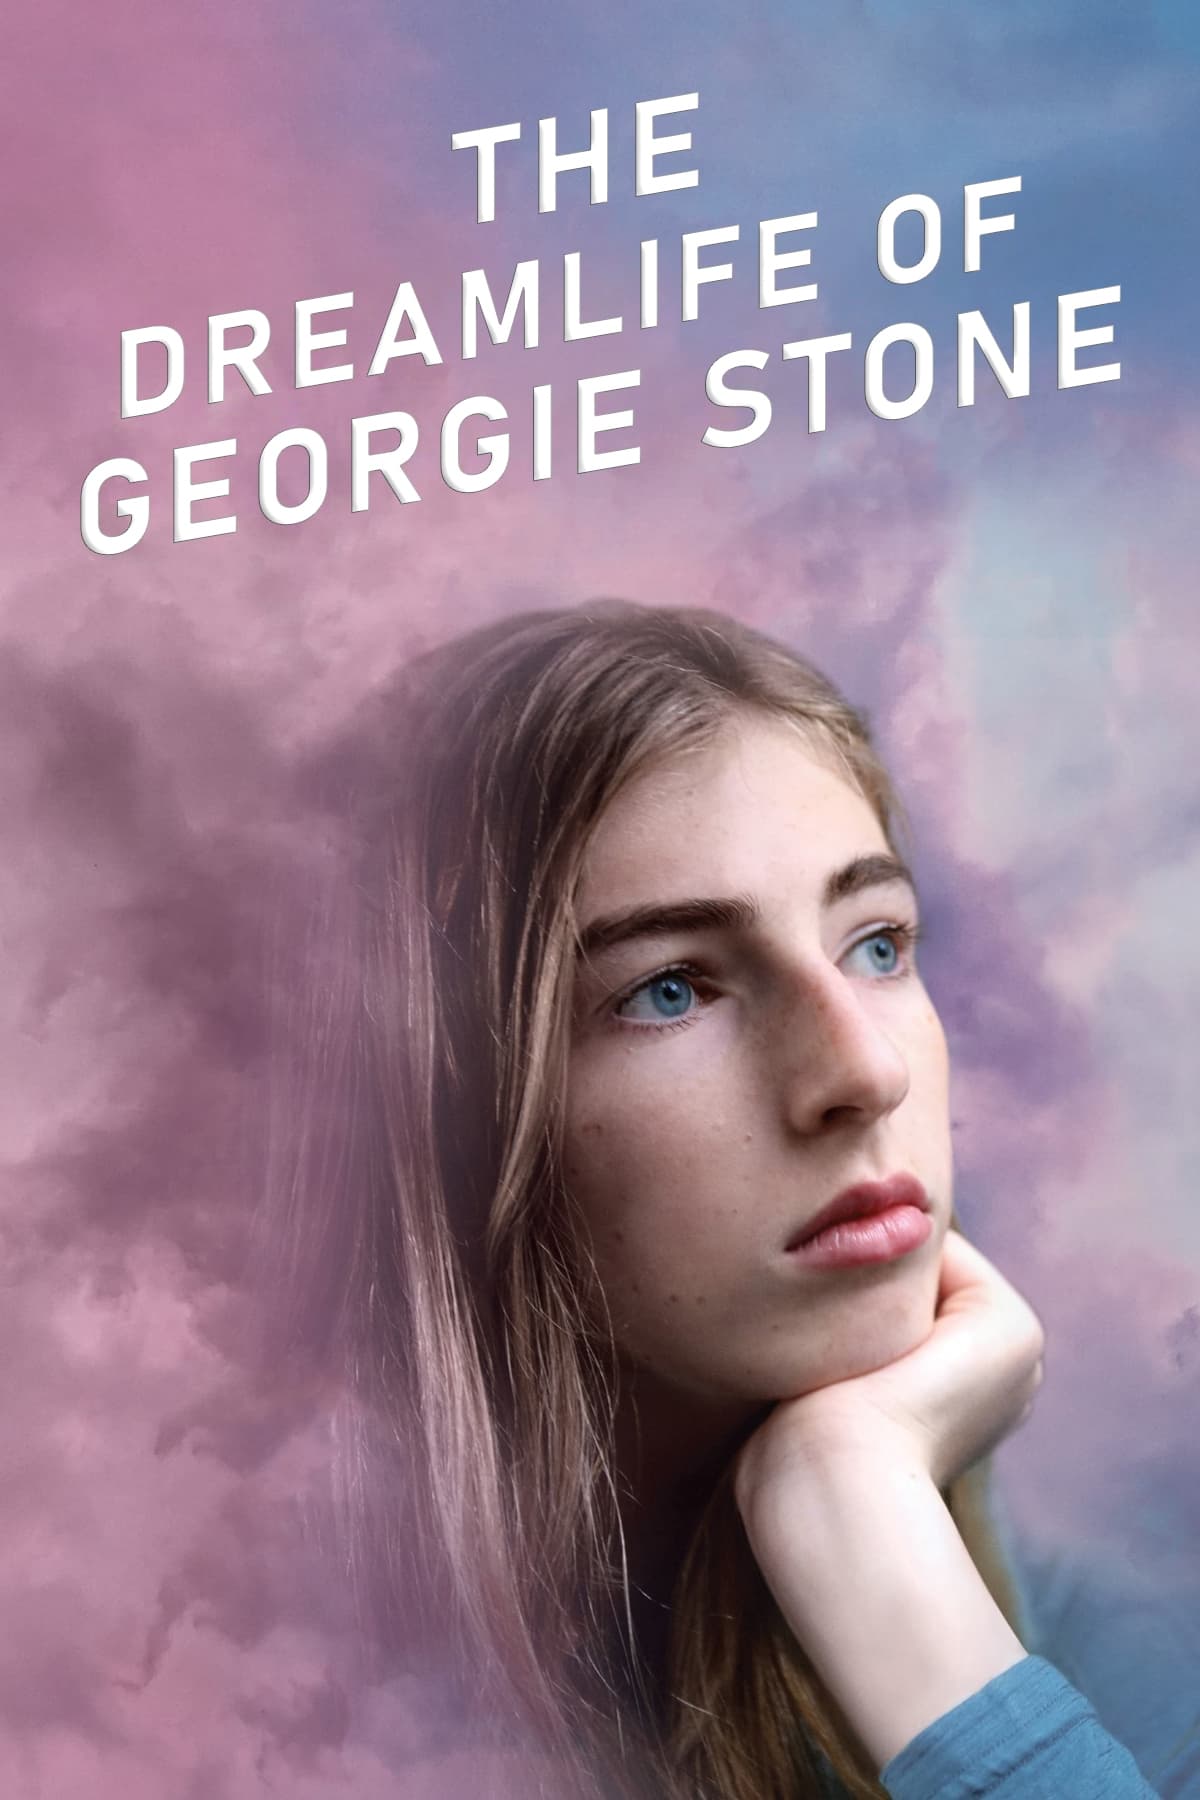 Cuộc sống trong mơ của Georgie Stone